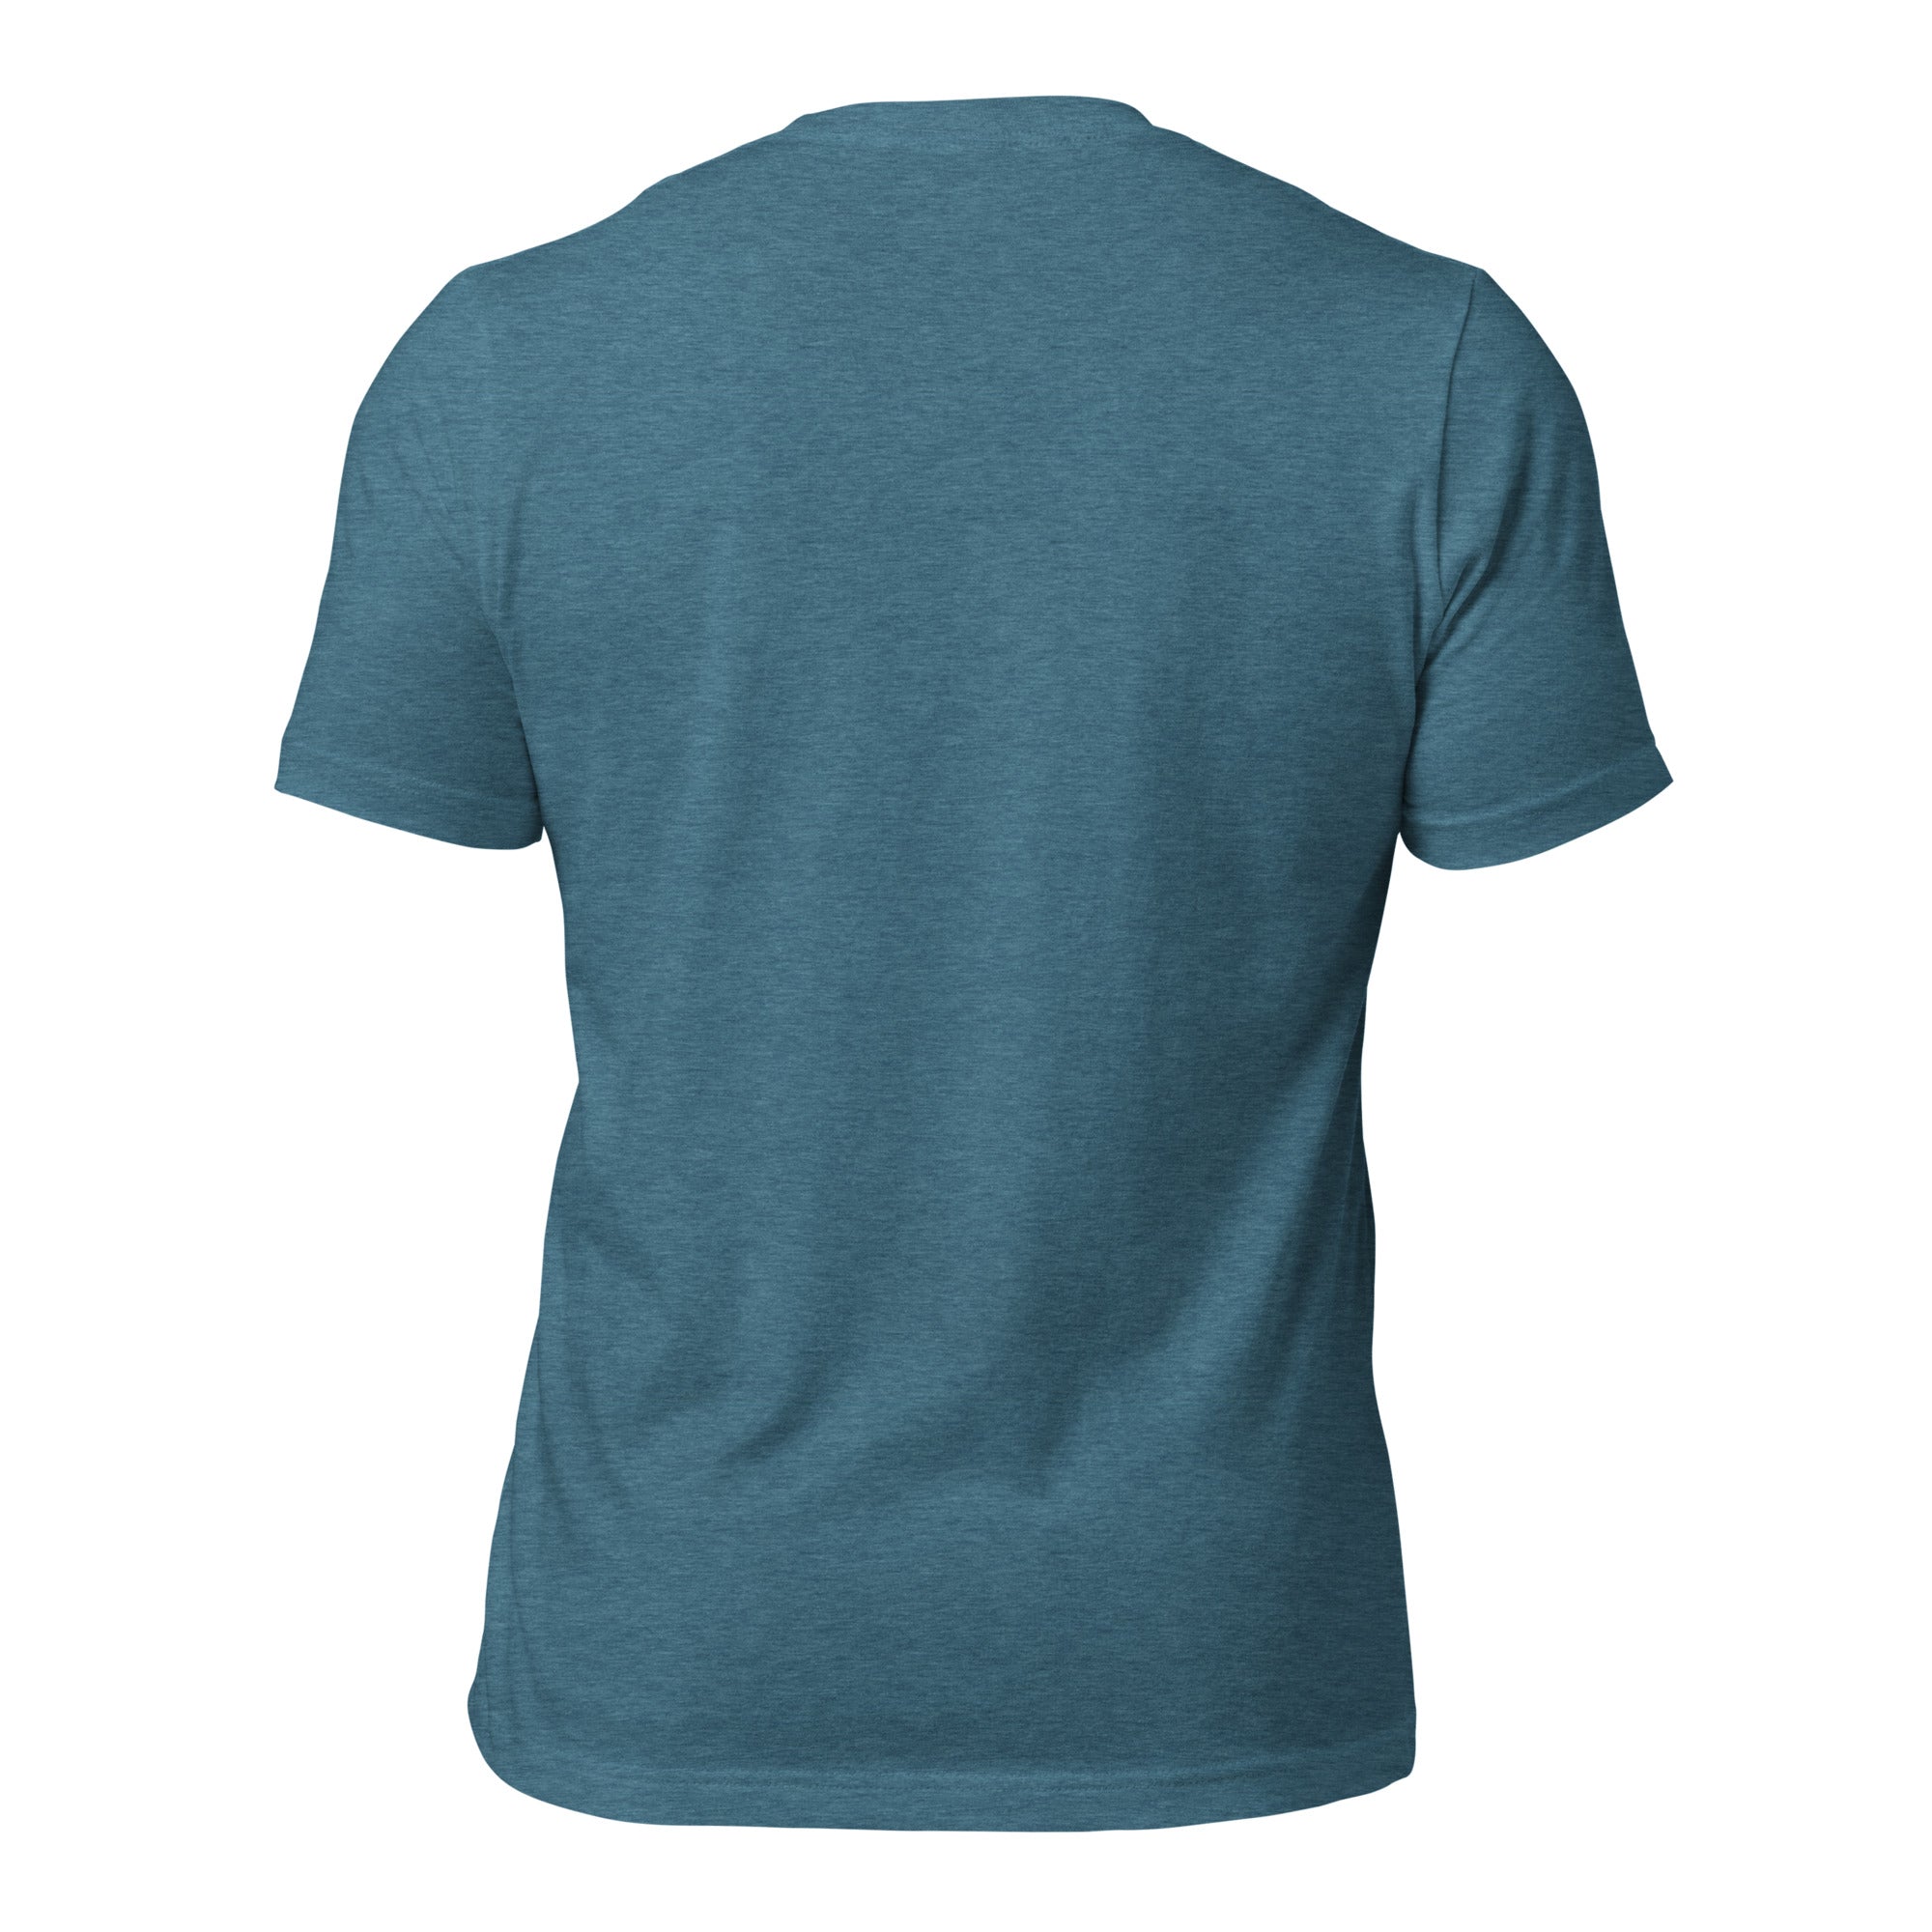 T-shirt en coton unisexe Superboogieman saves the party sur couleurs chinées foncées